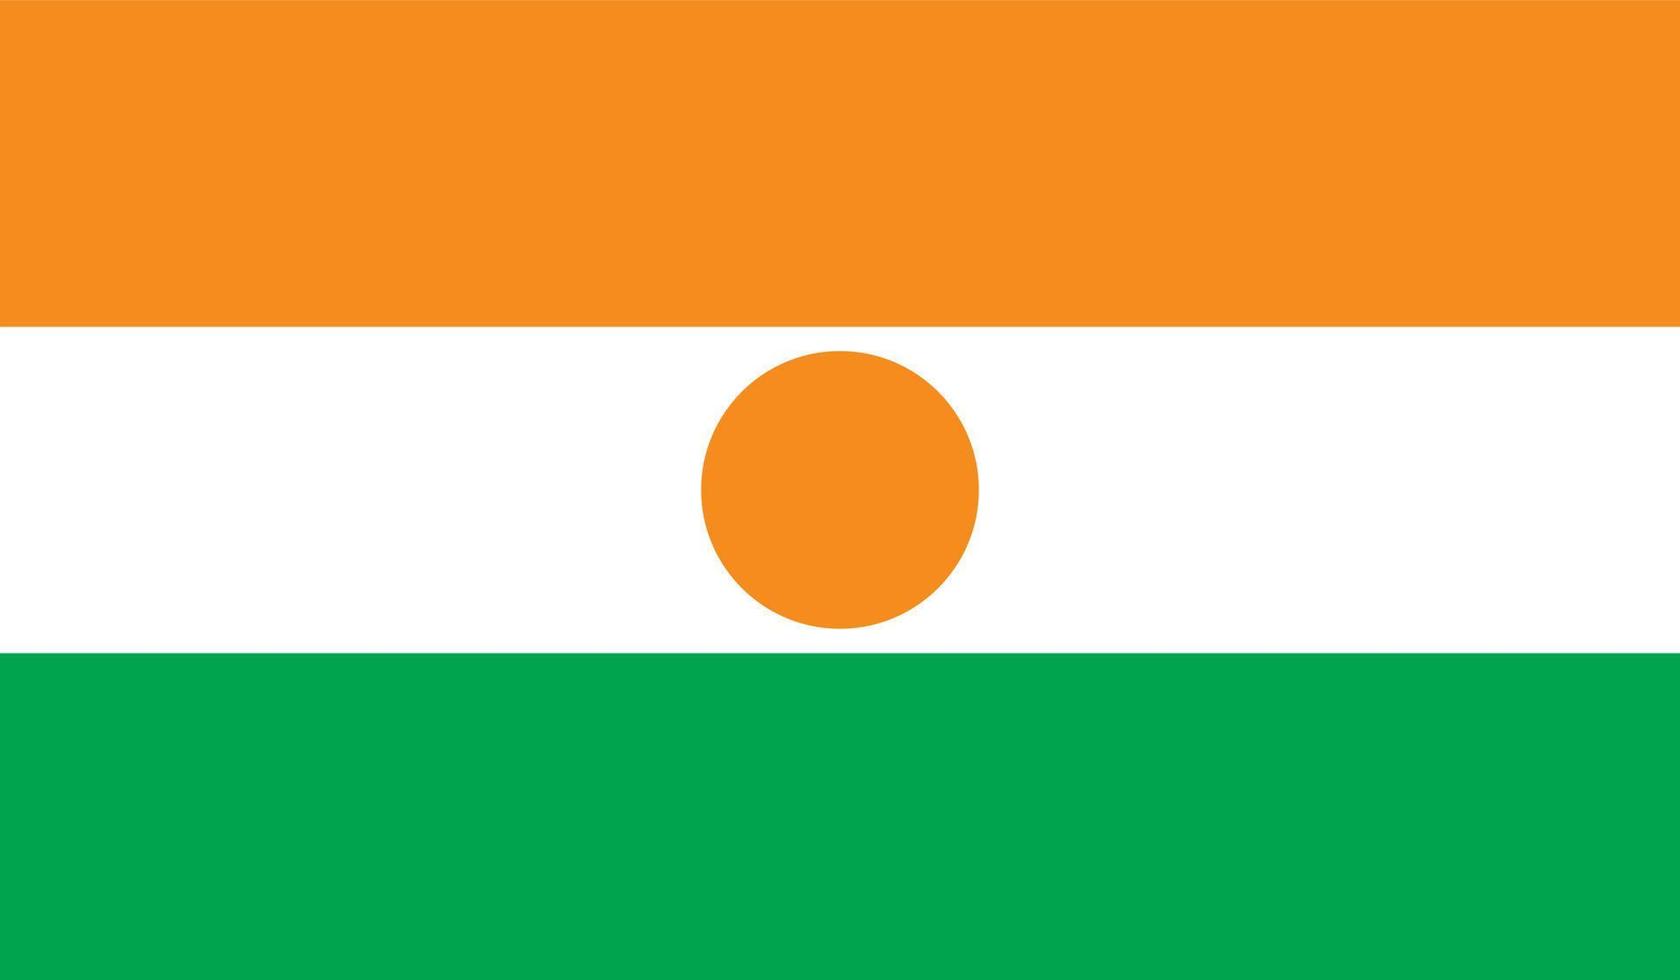 image du drapeau nigérien vecteur